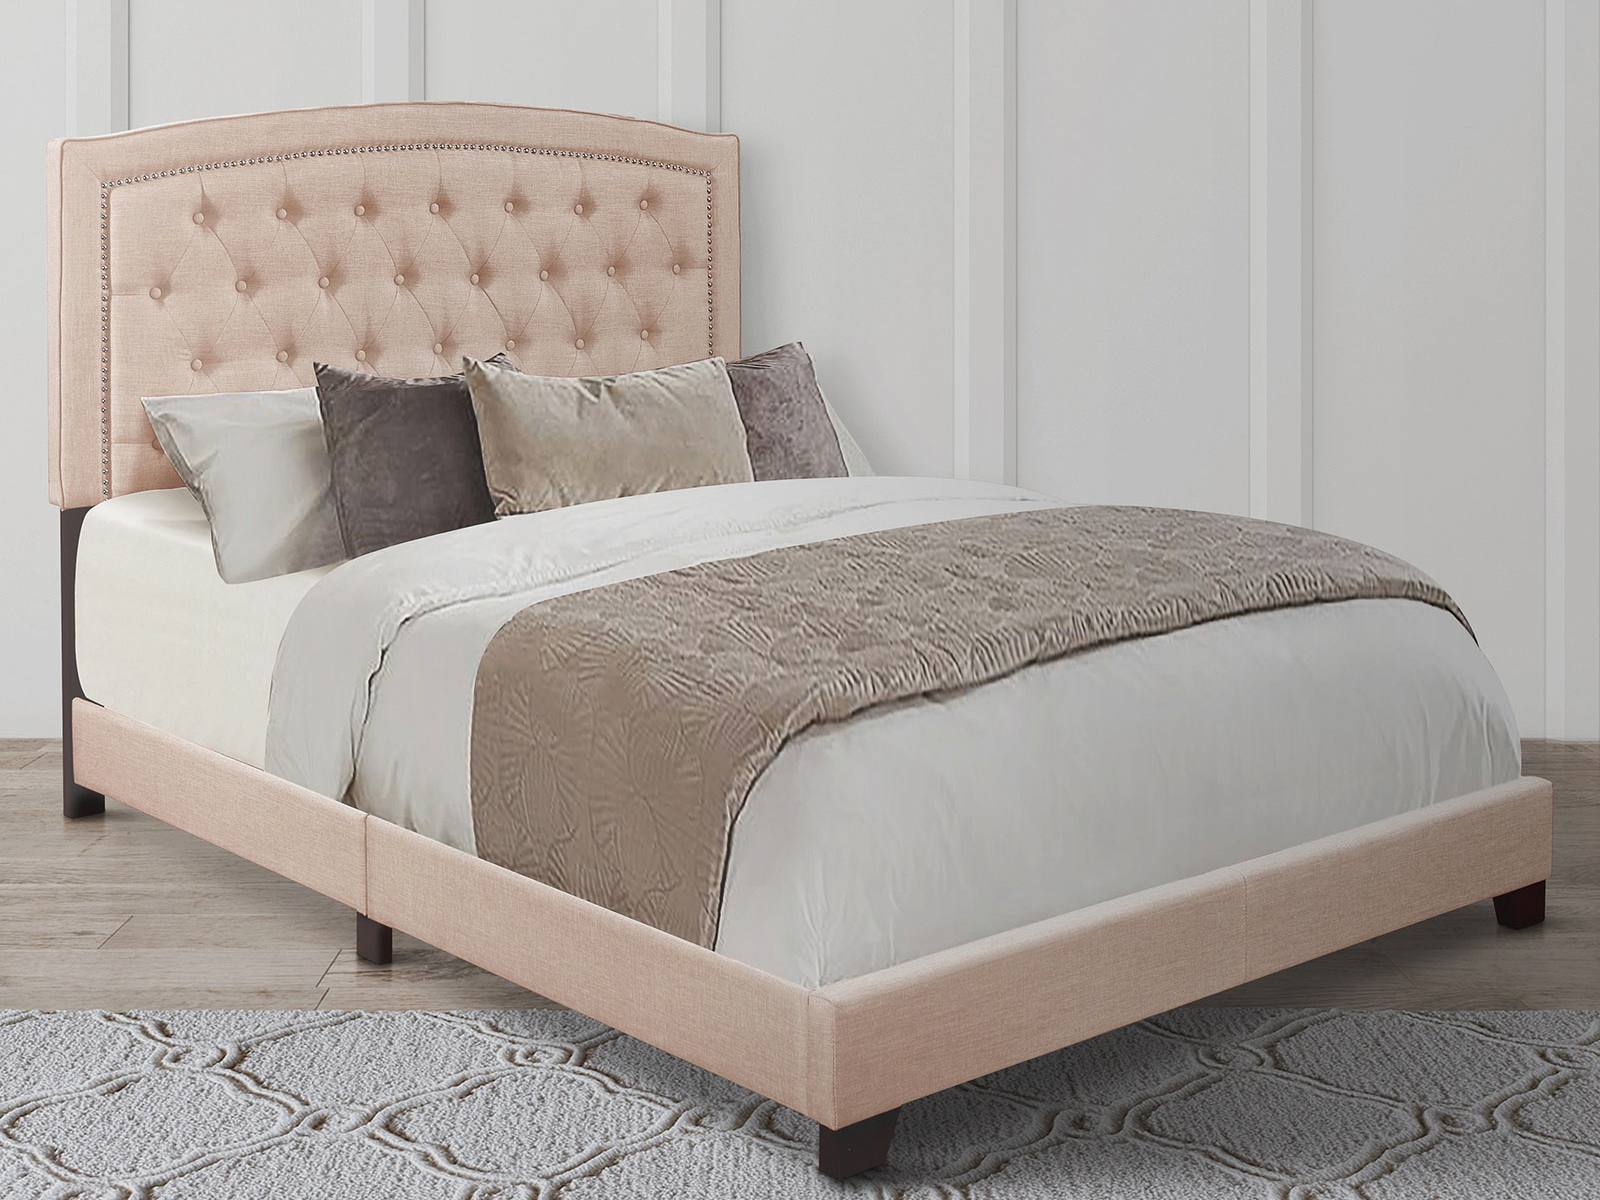 Homelegance Upholstered Bed Set | Queen | Linden Bed Frame & Headboard | Beige